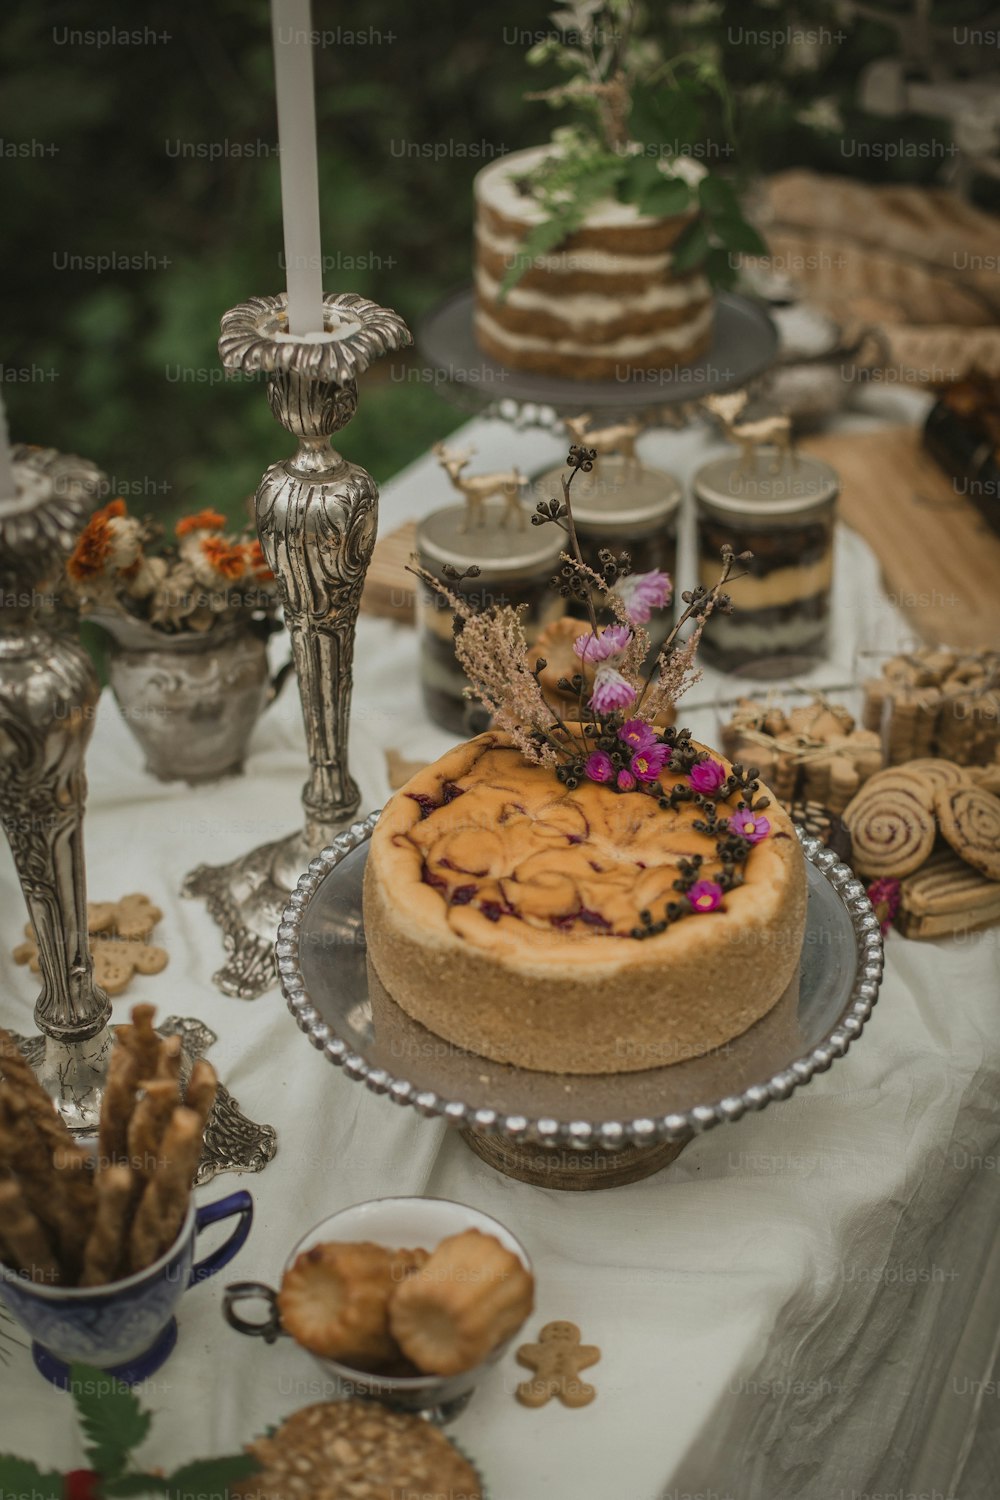 설탕으로 덮인 케이크를 얹은 테이블